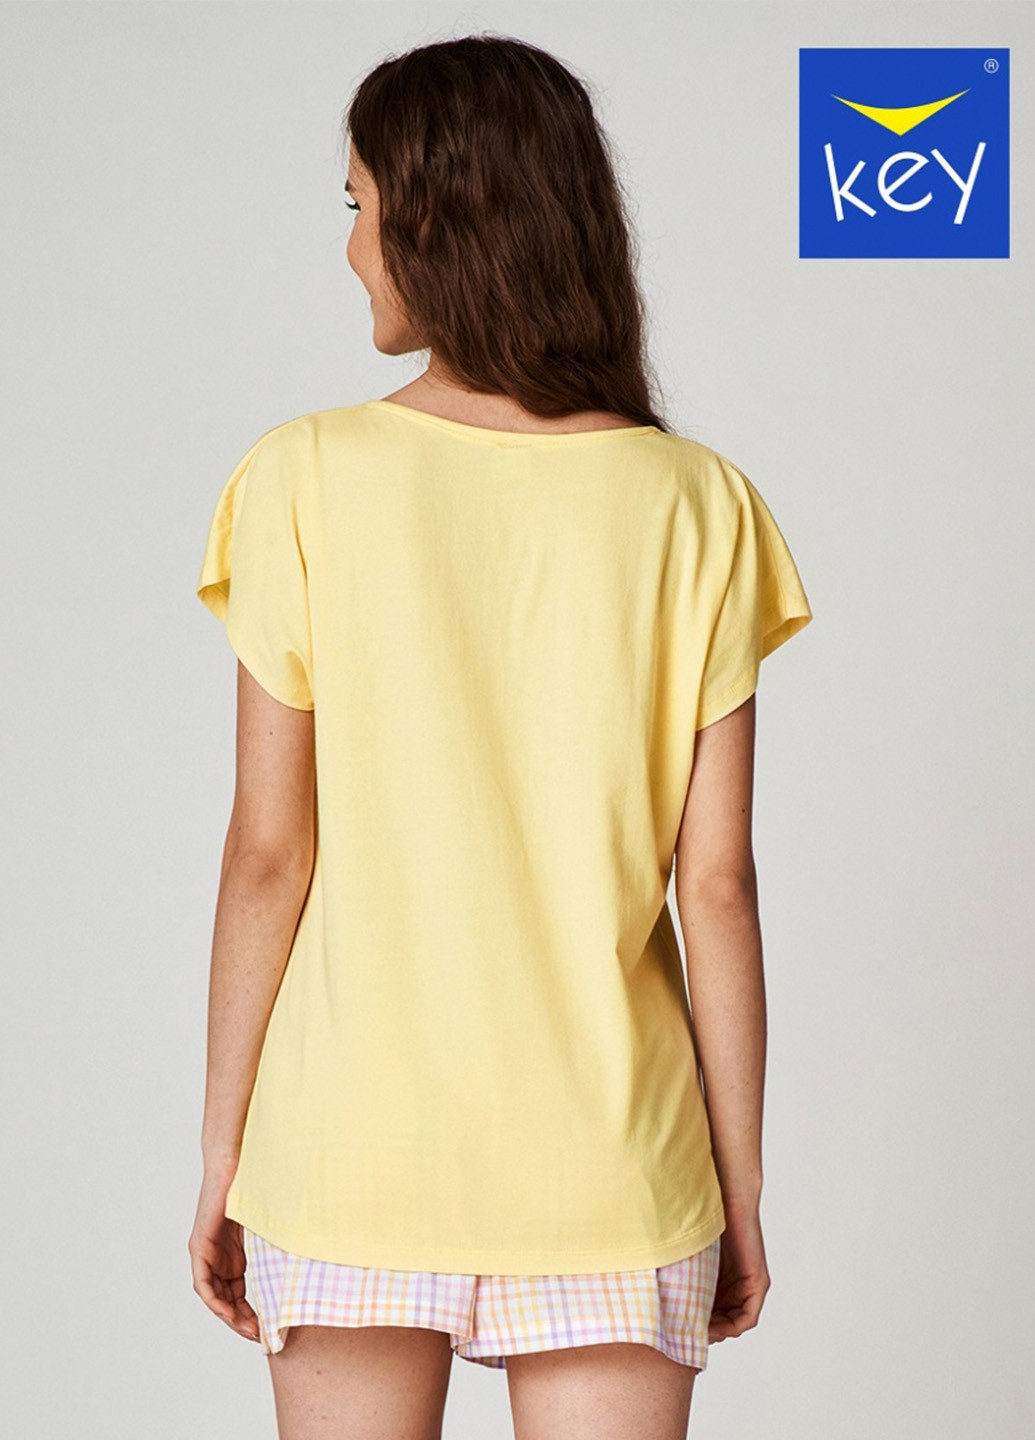 Жовта всесезон піжама (футболка, шорти) футболка + шорти Key